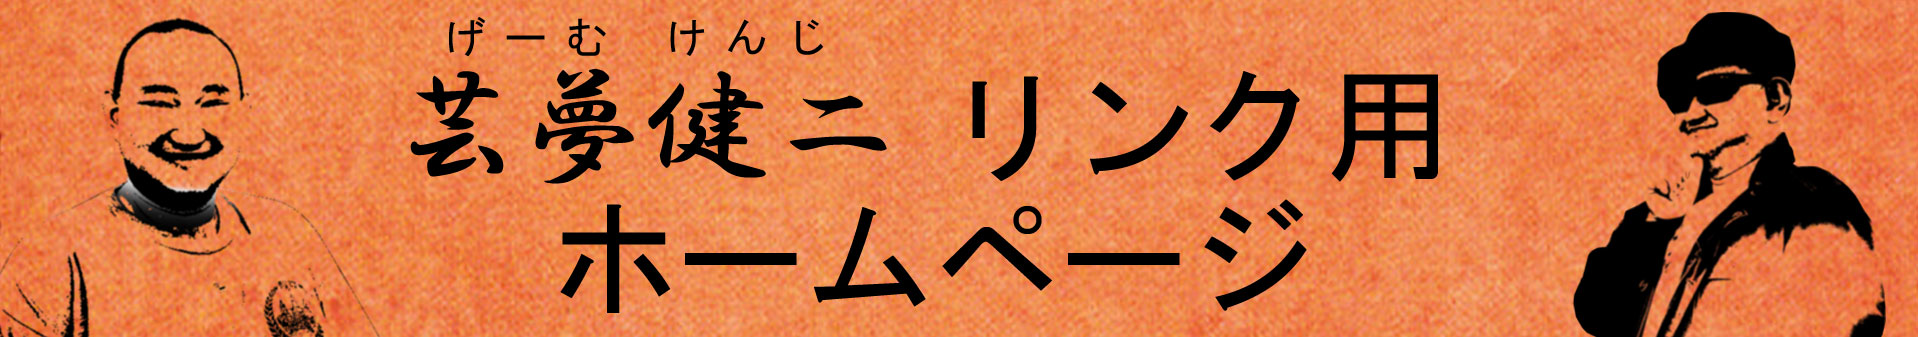 芸夢健二 リンク集のロゴ